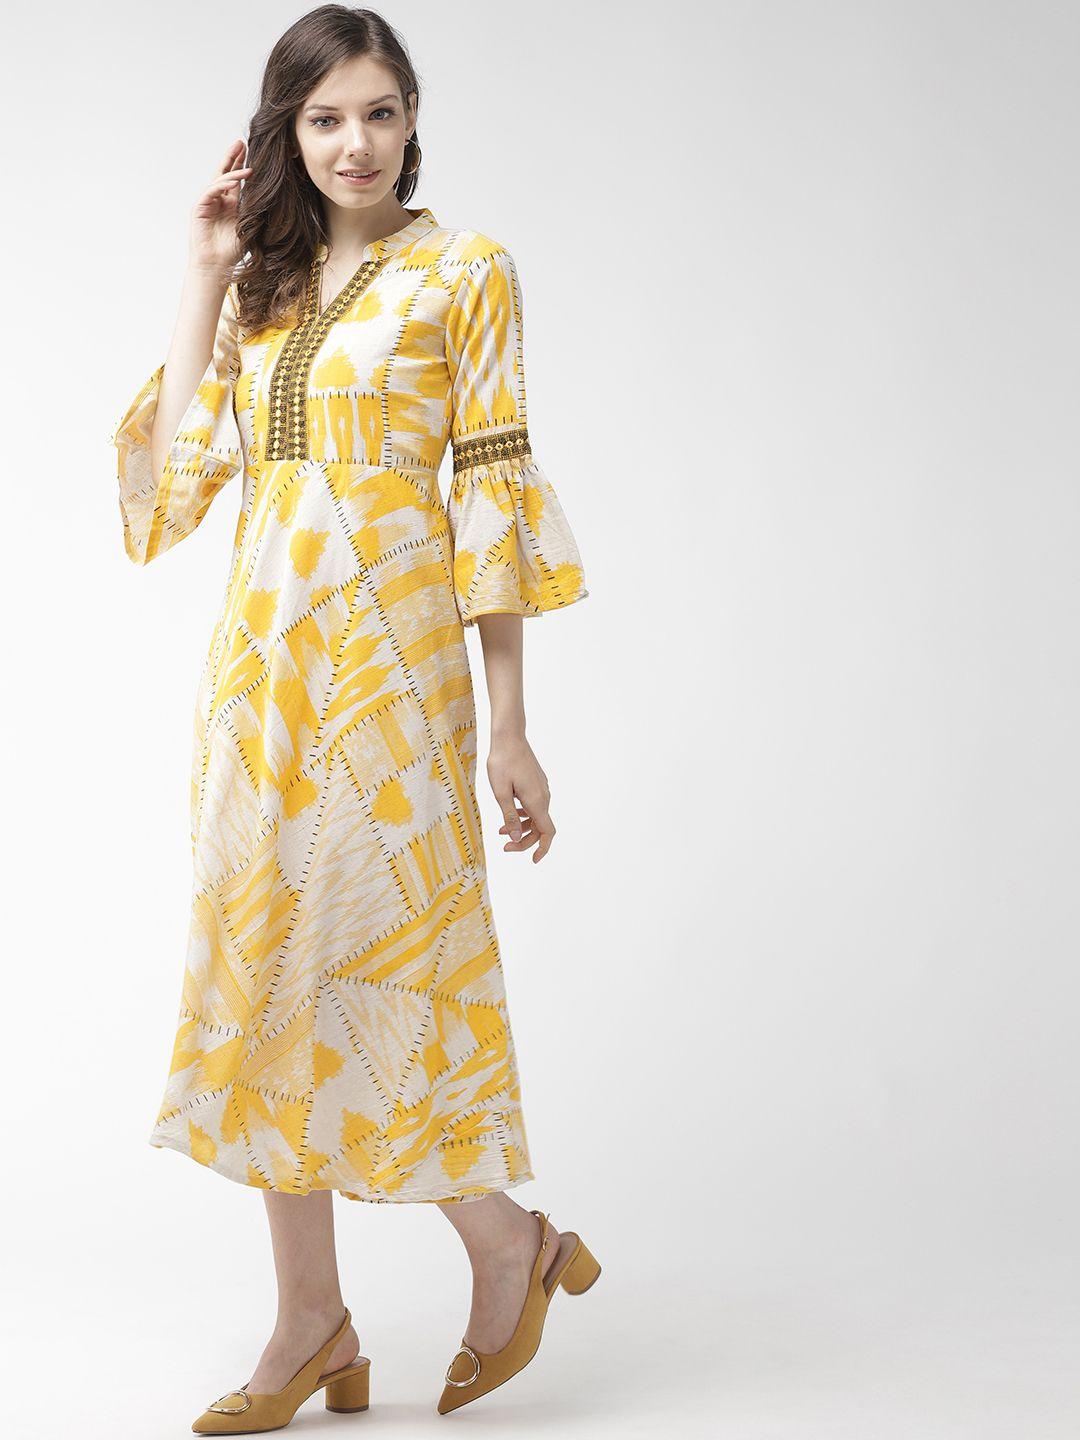 rangmayee women yellow & off-white printed a-line dress